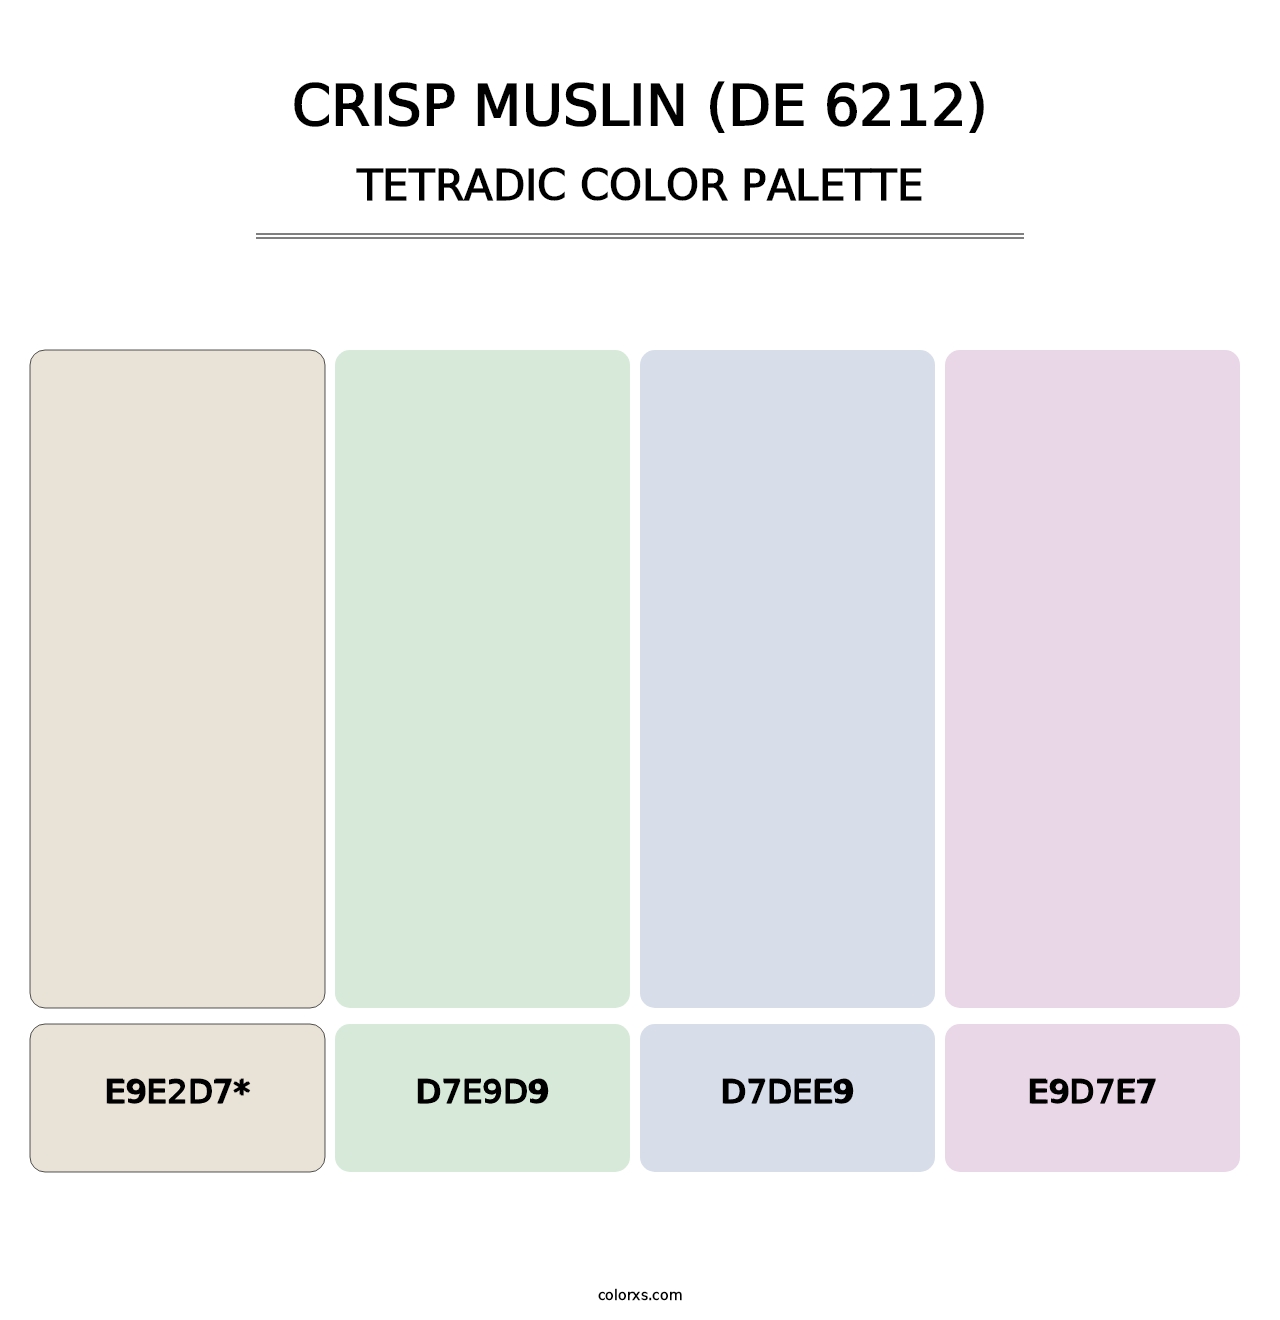 Crisp Muslin (DE 6212) - Tetradic Color Palette